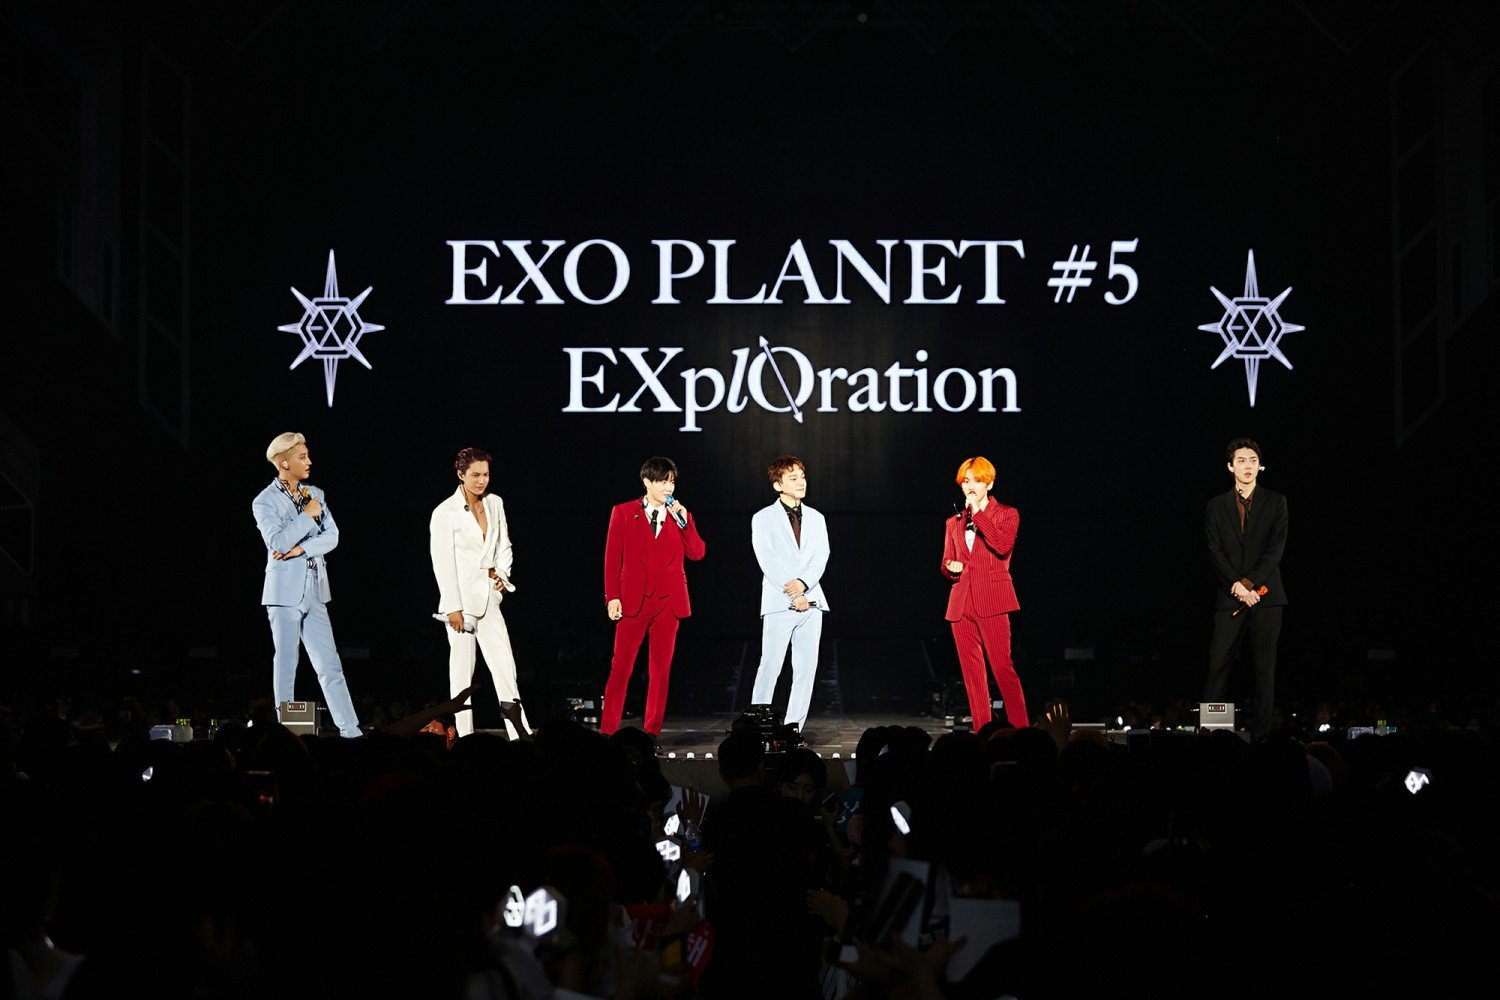 SM True พาร่วมสำรวจอวกาศนิรนามไปกับราชาแห่งเค-ป๊อป ‘EXO’ ในคอนเสิร์ตครั้งที่ 5 “EXO PLANET #5 - EXplOration - in BANGKOK” 3 รอบการแสดง 20, 21, 22 กันยายนนี้!